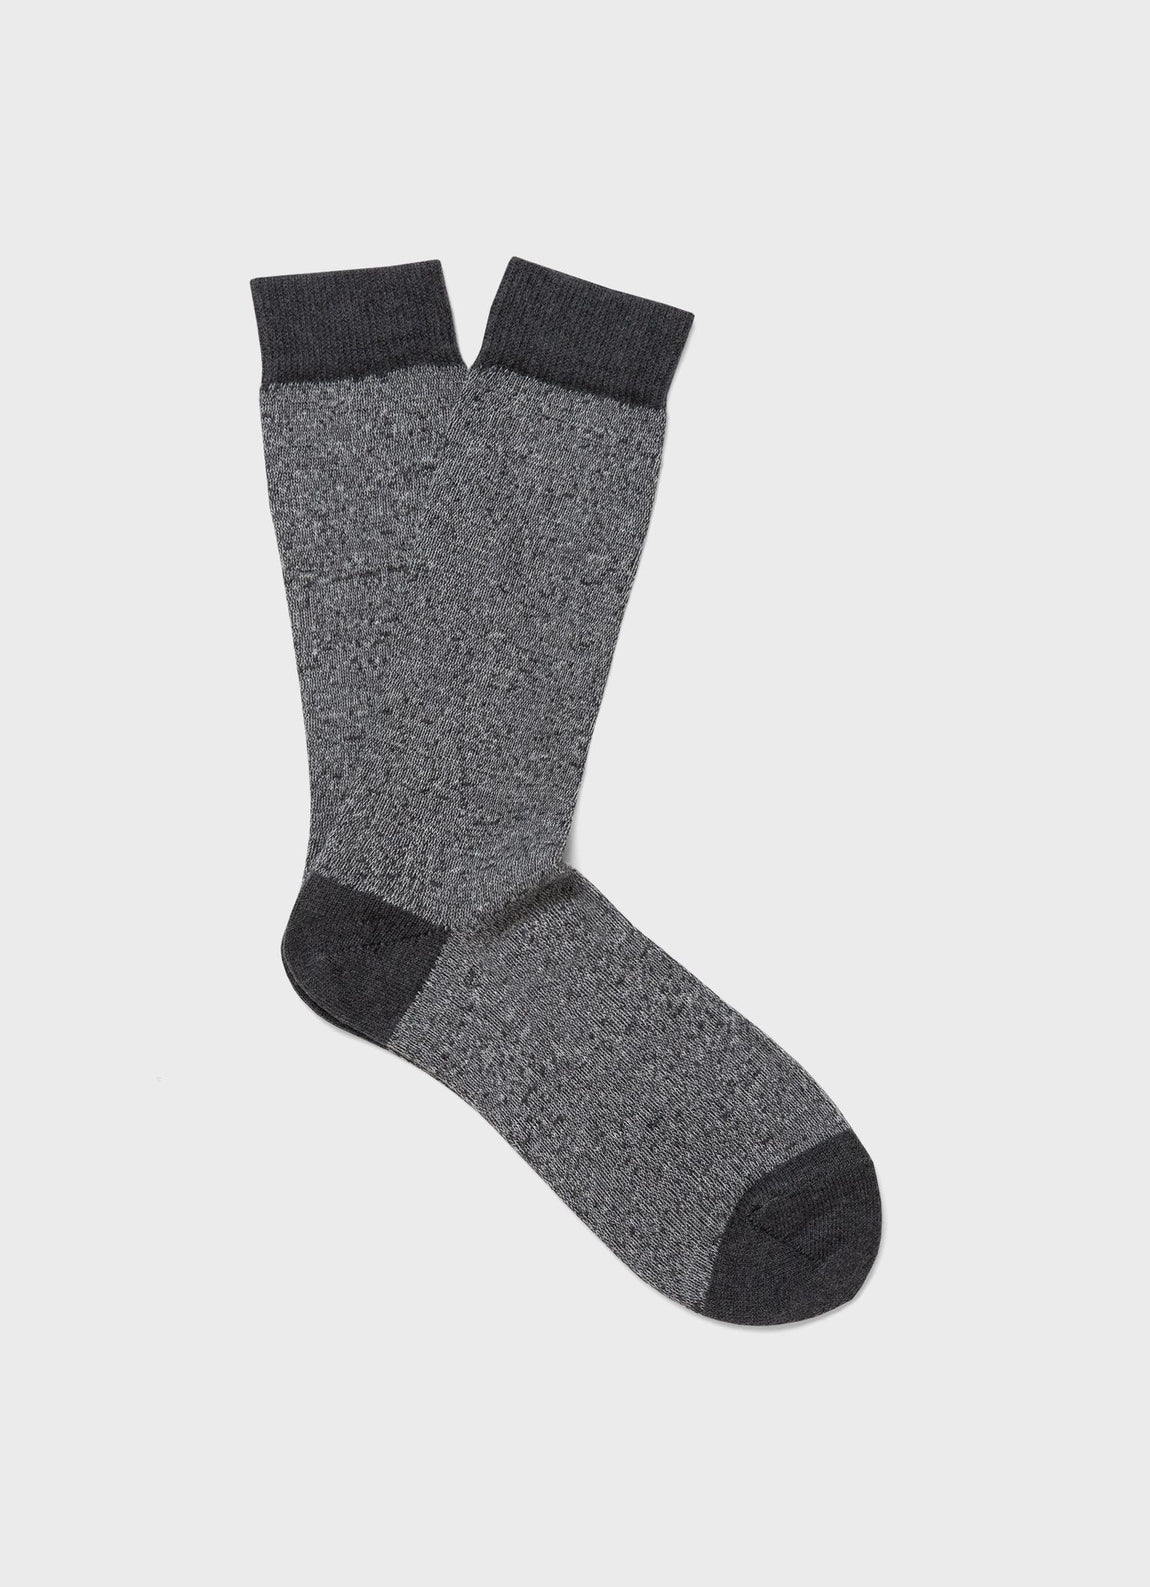 Men's Cotton Socks in Grey Marl Twist